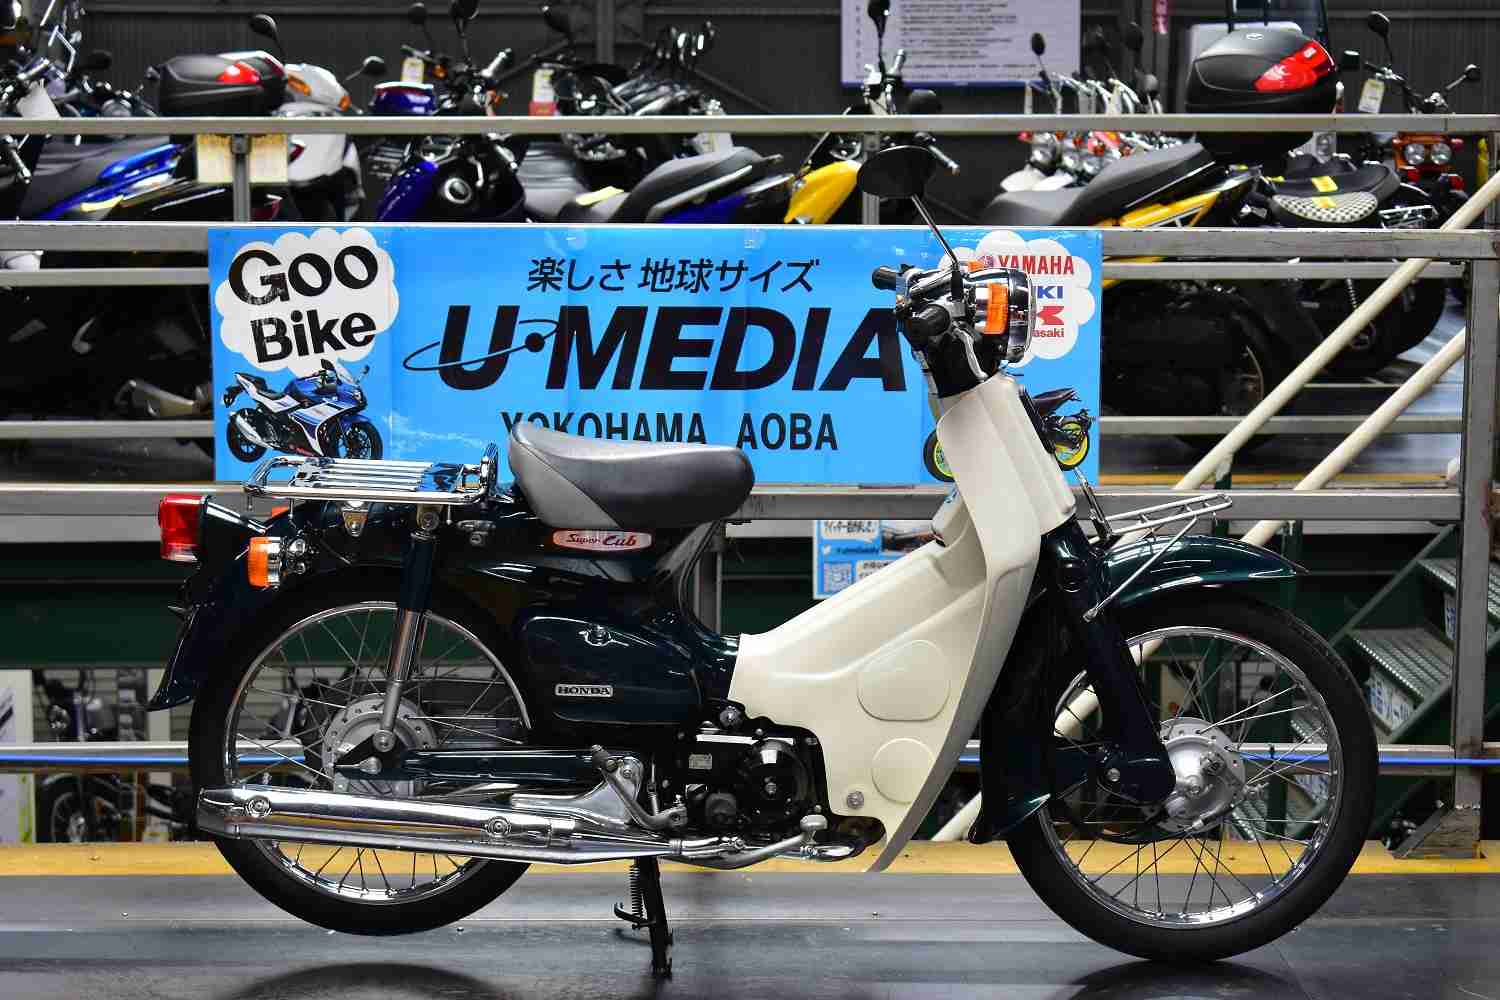 ホンダ スーパーカブ50 バイク探し U Media ユーメディア 中古バイク 新車バイク探しの決定版 神奈川 東京でバイク探すならユーメディア